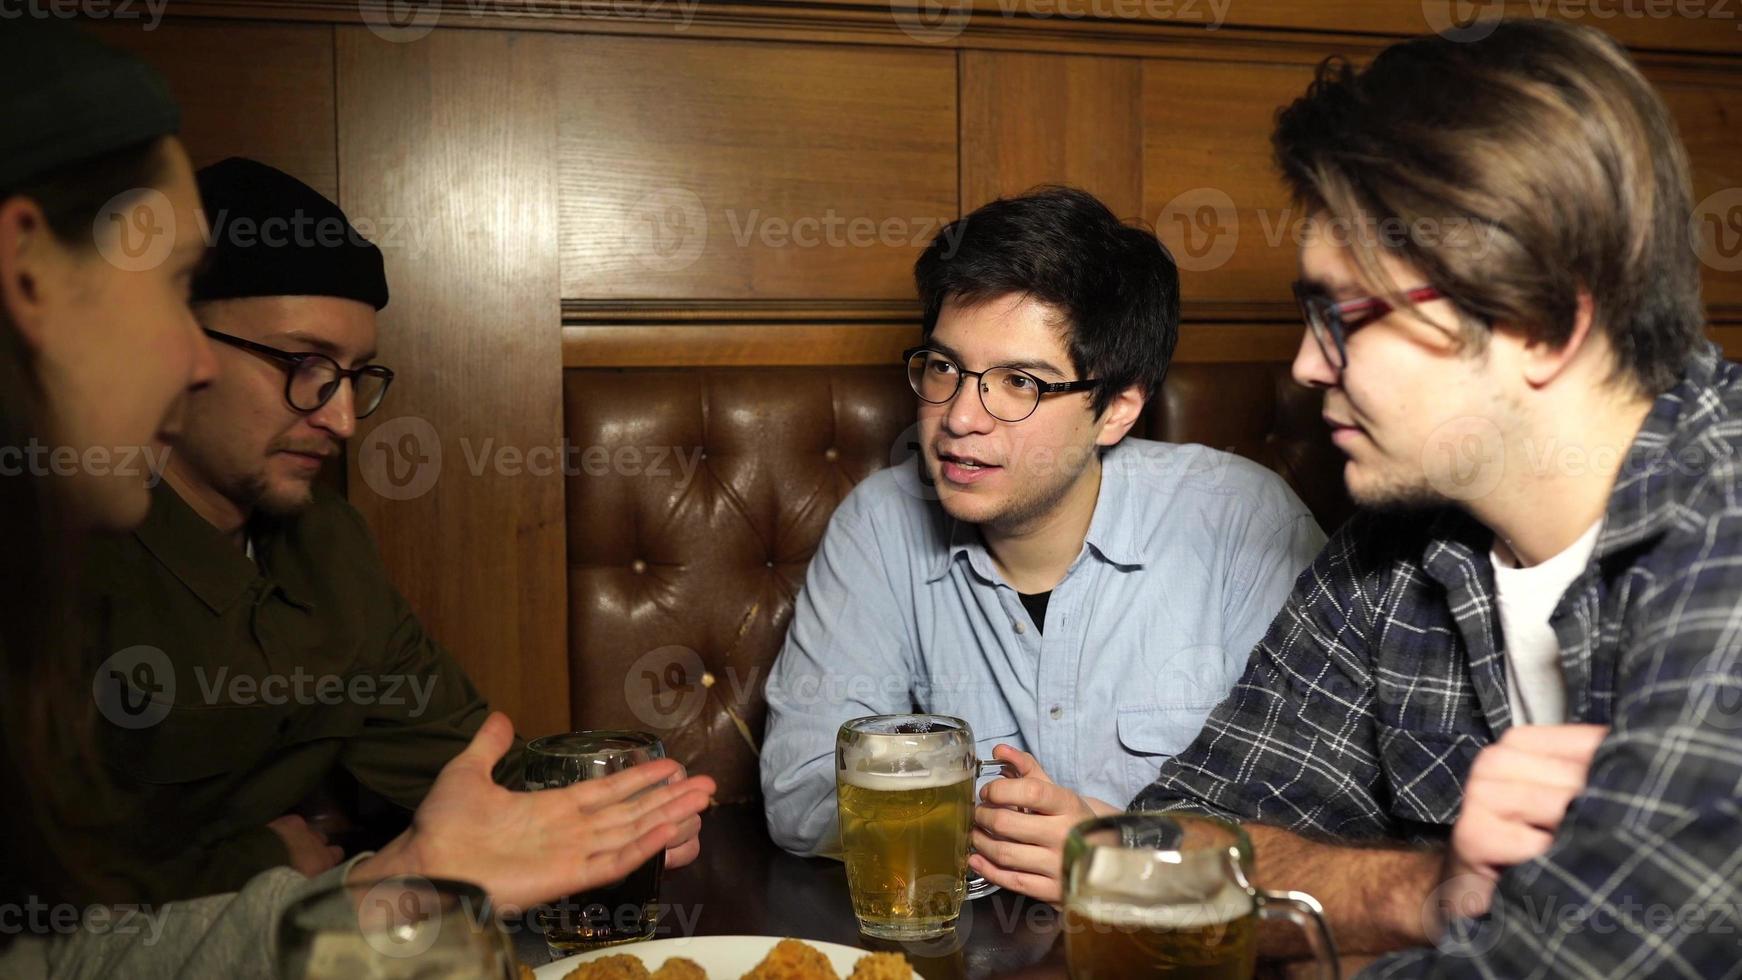 jovens amigos se divertindo juntos bebendo cerveja em um pub. foto